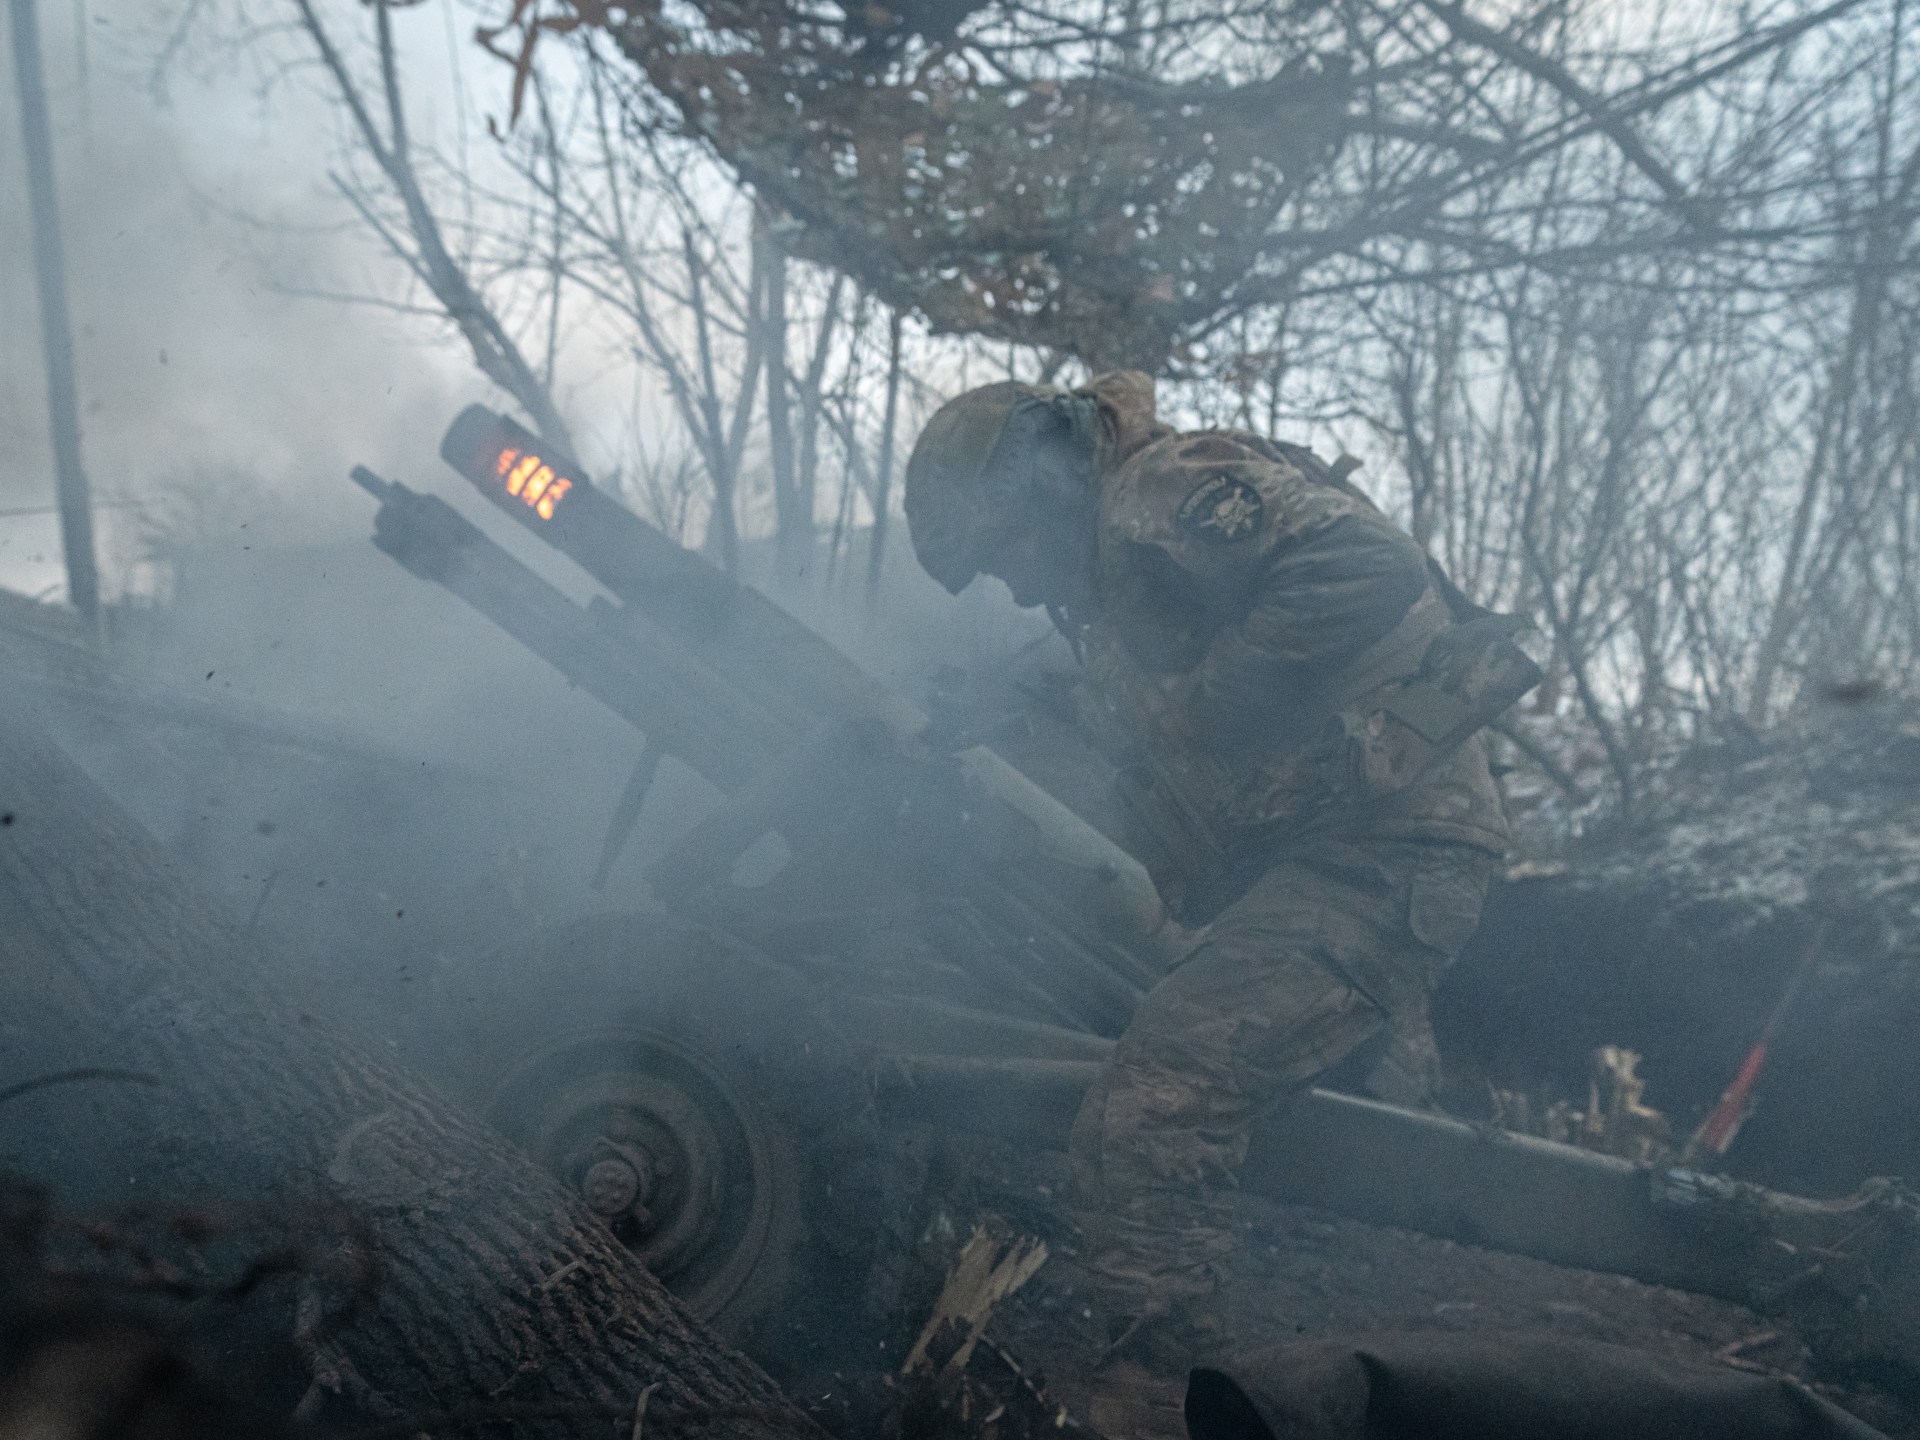 روسيا وأوكرانيا تتبادلان الأسرى والقتال يحتدم للسيطرة على أدفيفكا | أخبار – البوكس نيوز